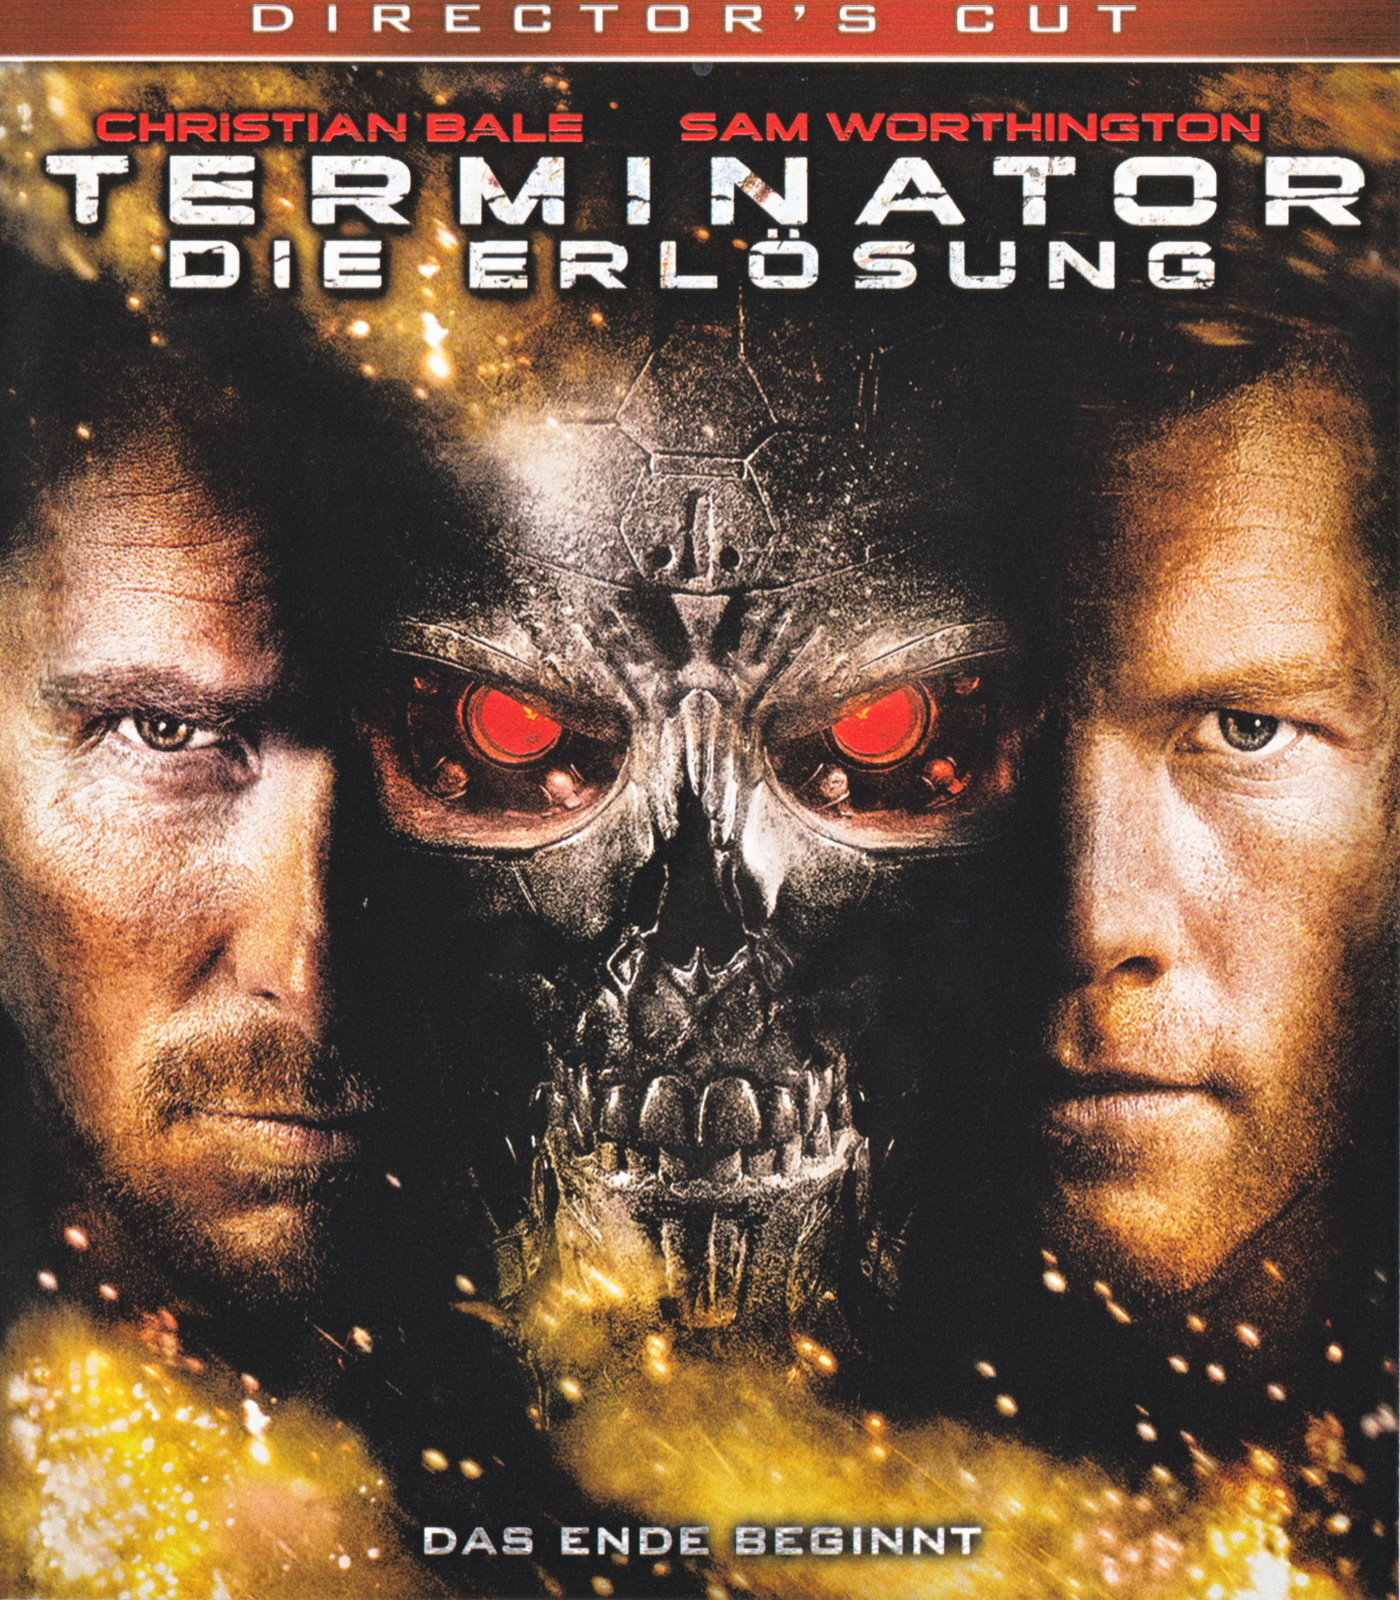 Cover - Terminator - Die Erlösung.jpg